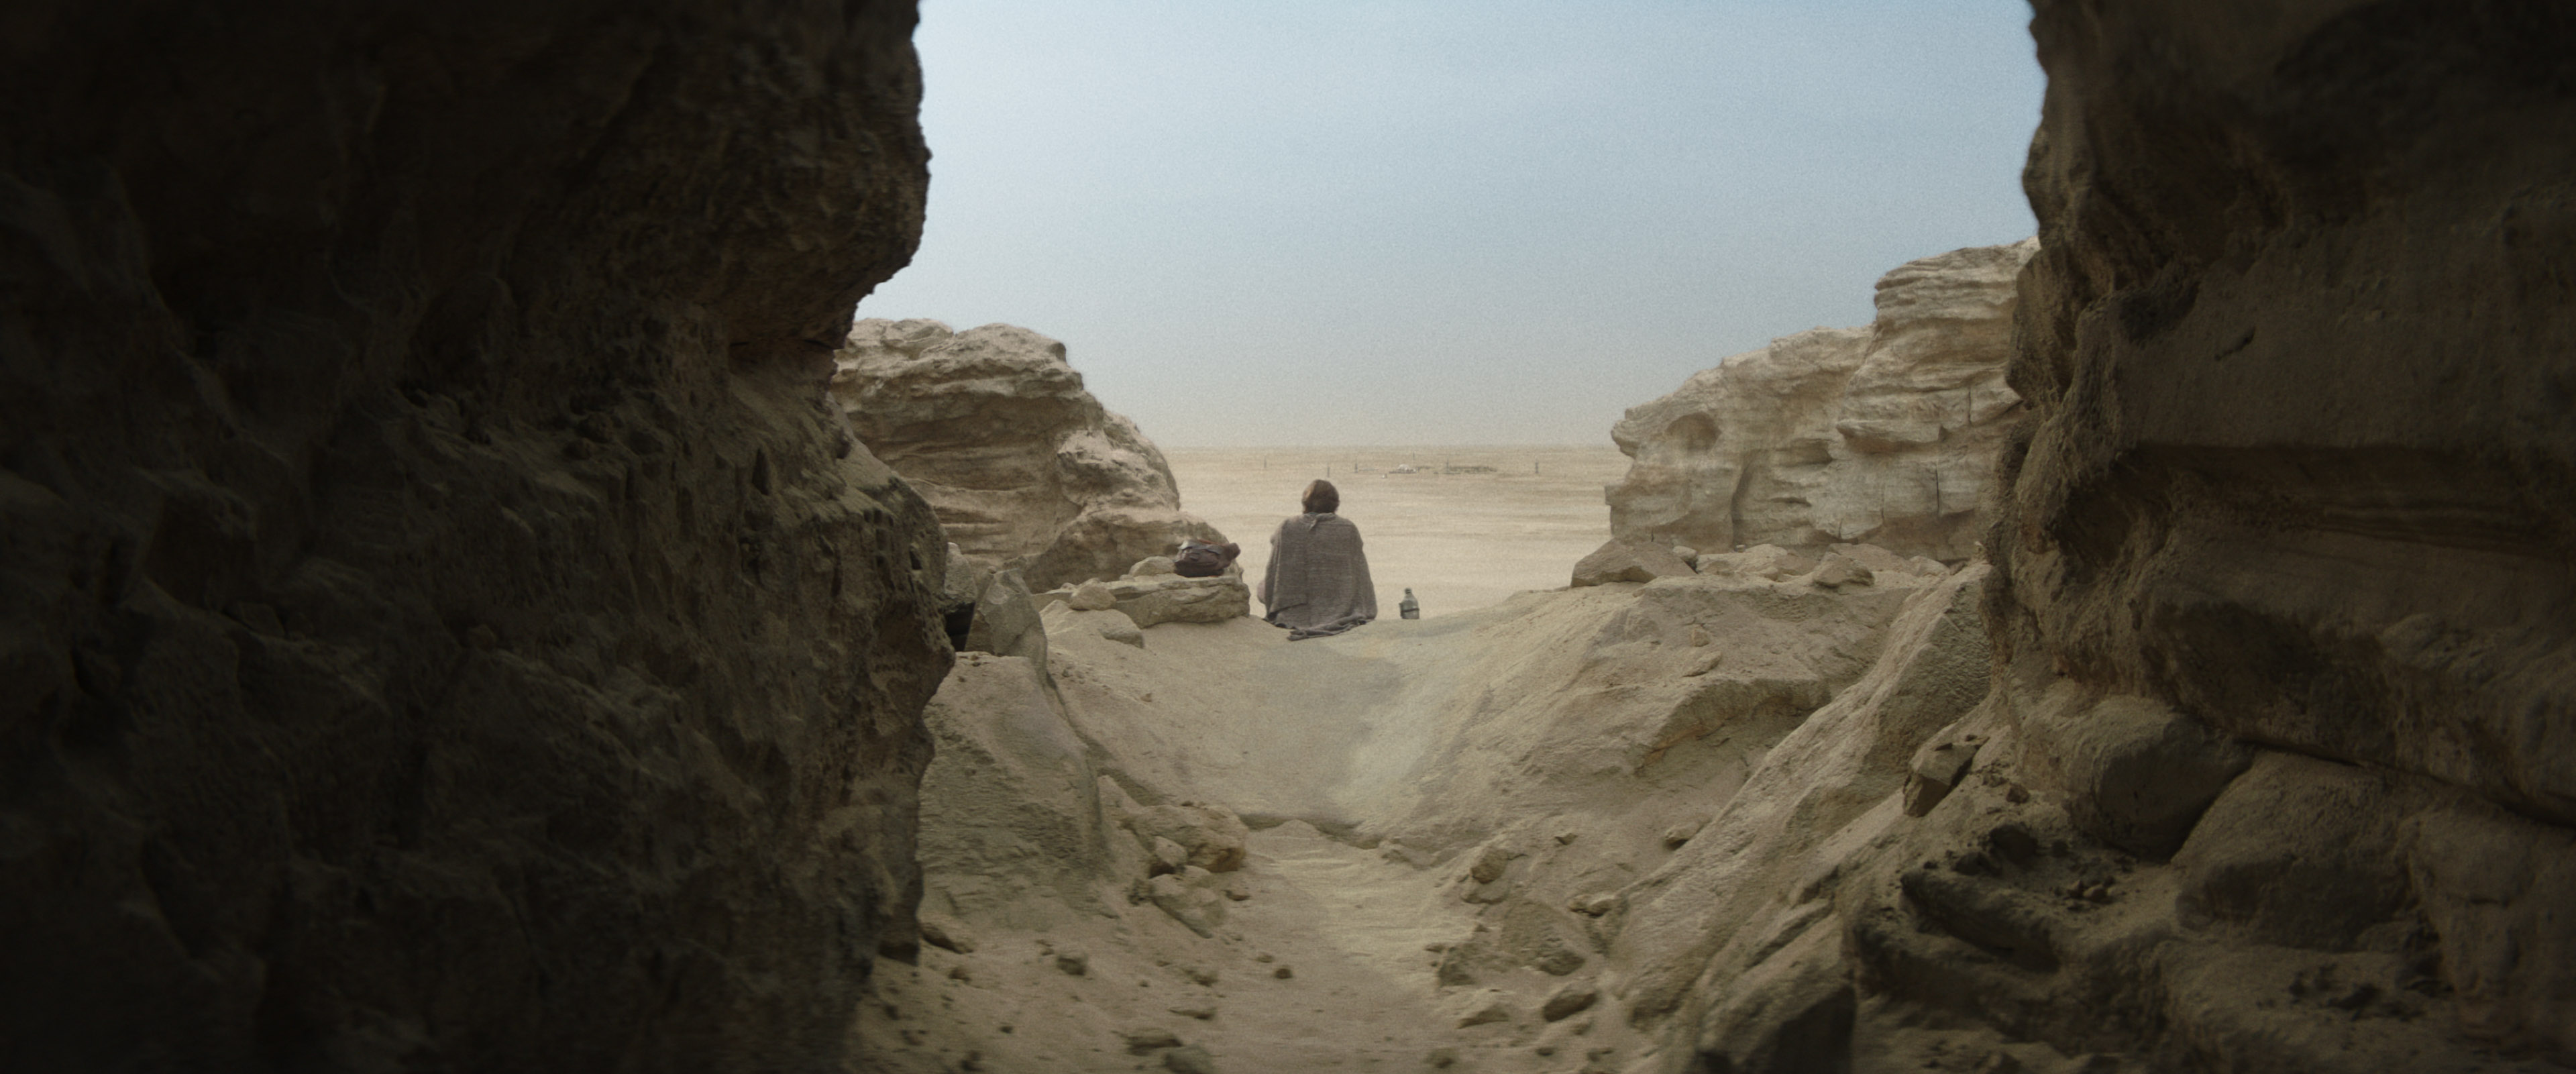 Moses Ingram Stuns As Sinister Jedi-Slayer In New 'Obi-Wan Kenobi' Trailer